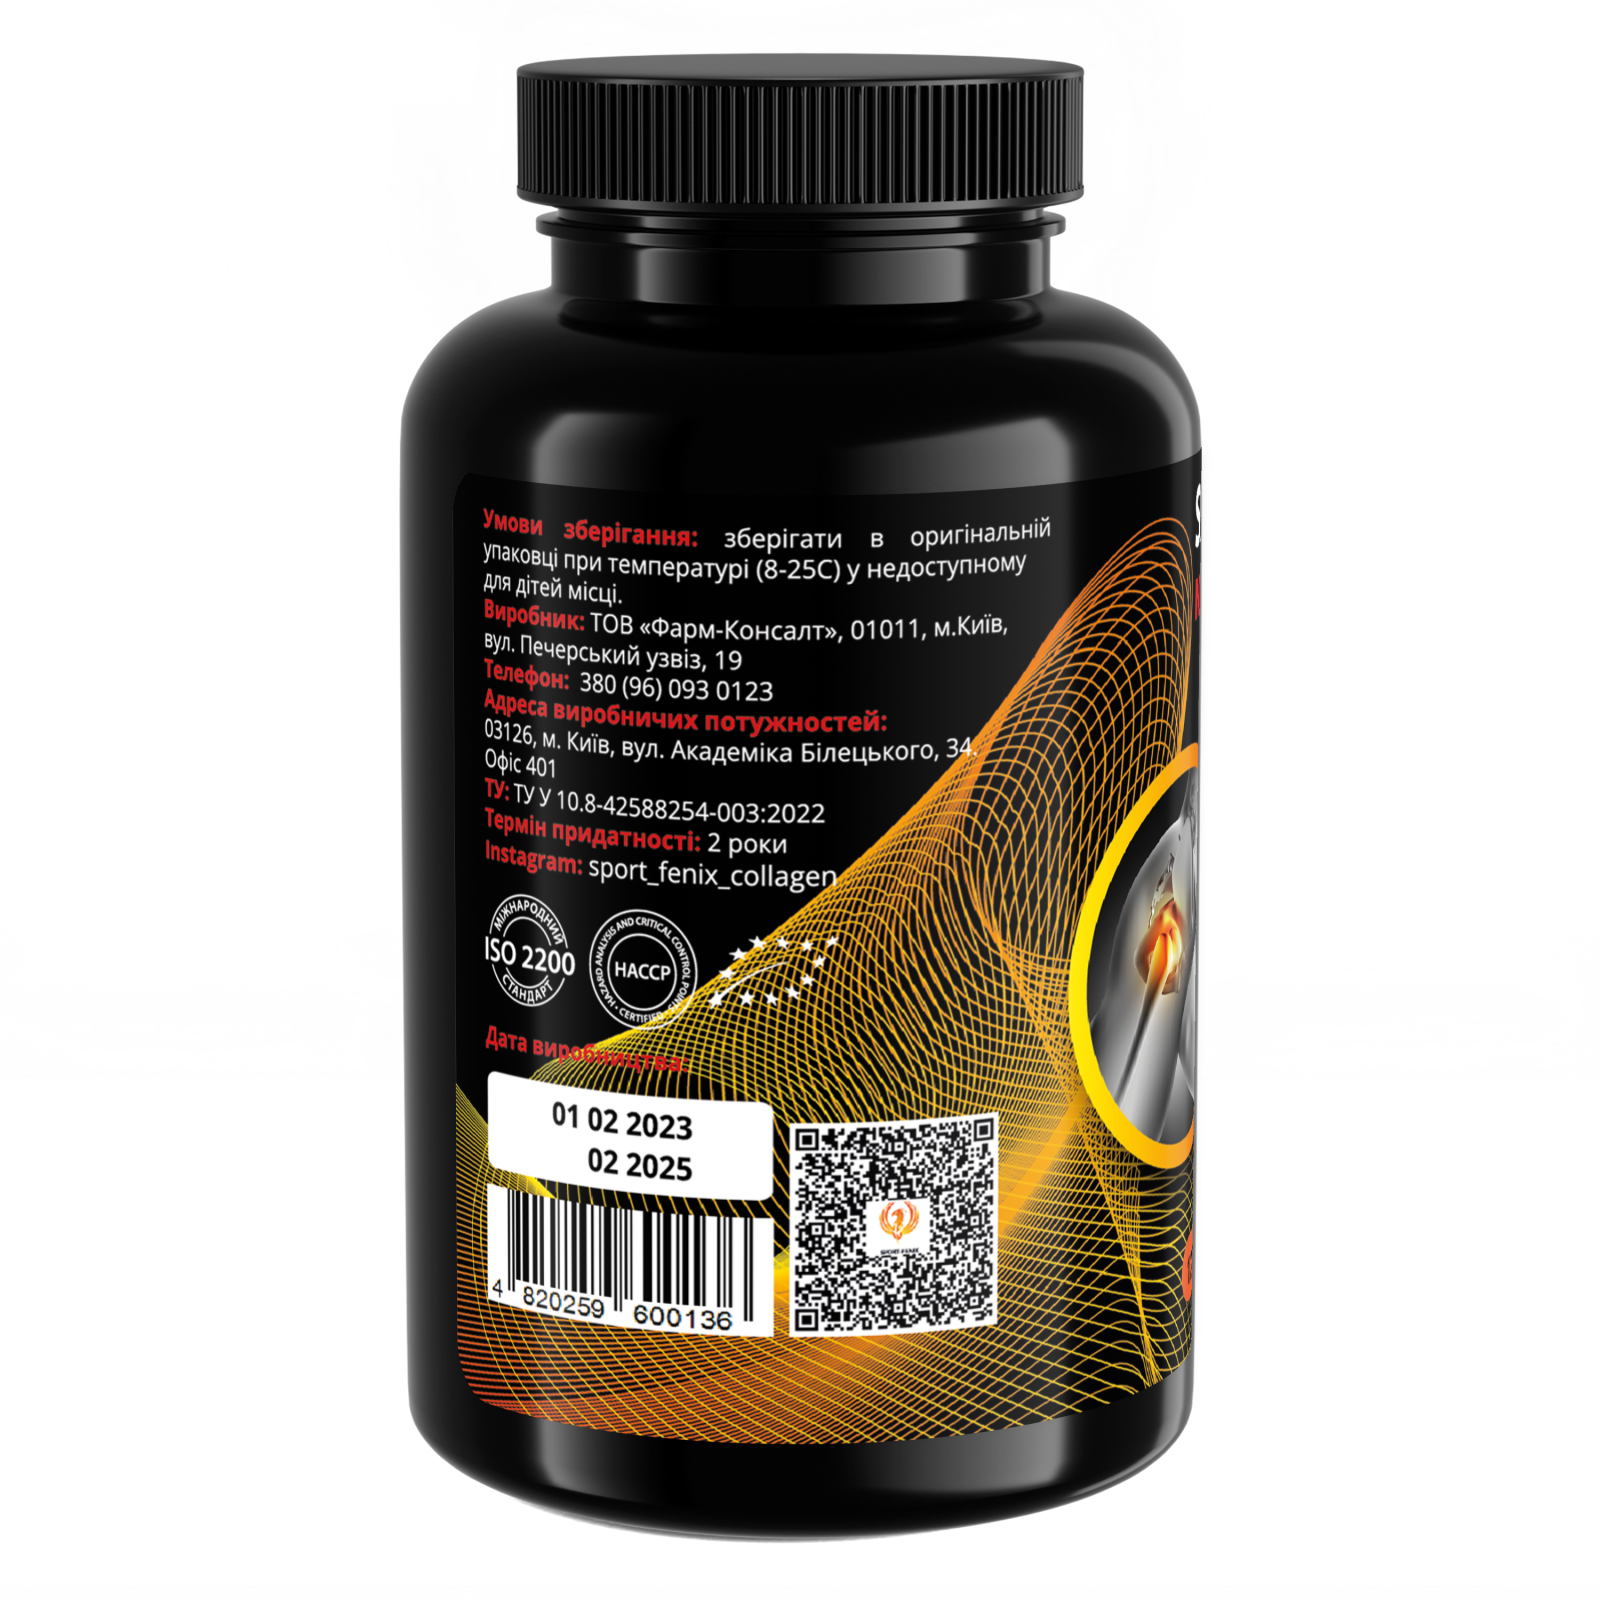 Комплекс Collagen для спорту TM SPORT FENIX NUTRITION з хондроїтином, глюкозаміном та МСМ +Вітамін D3, 120 капсул